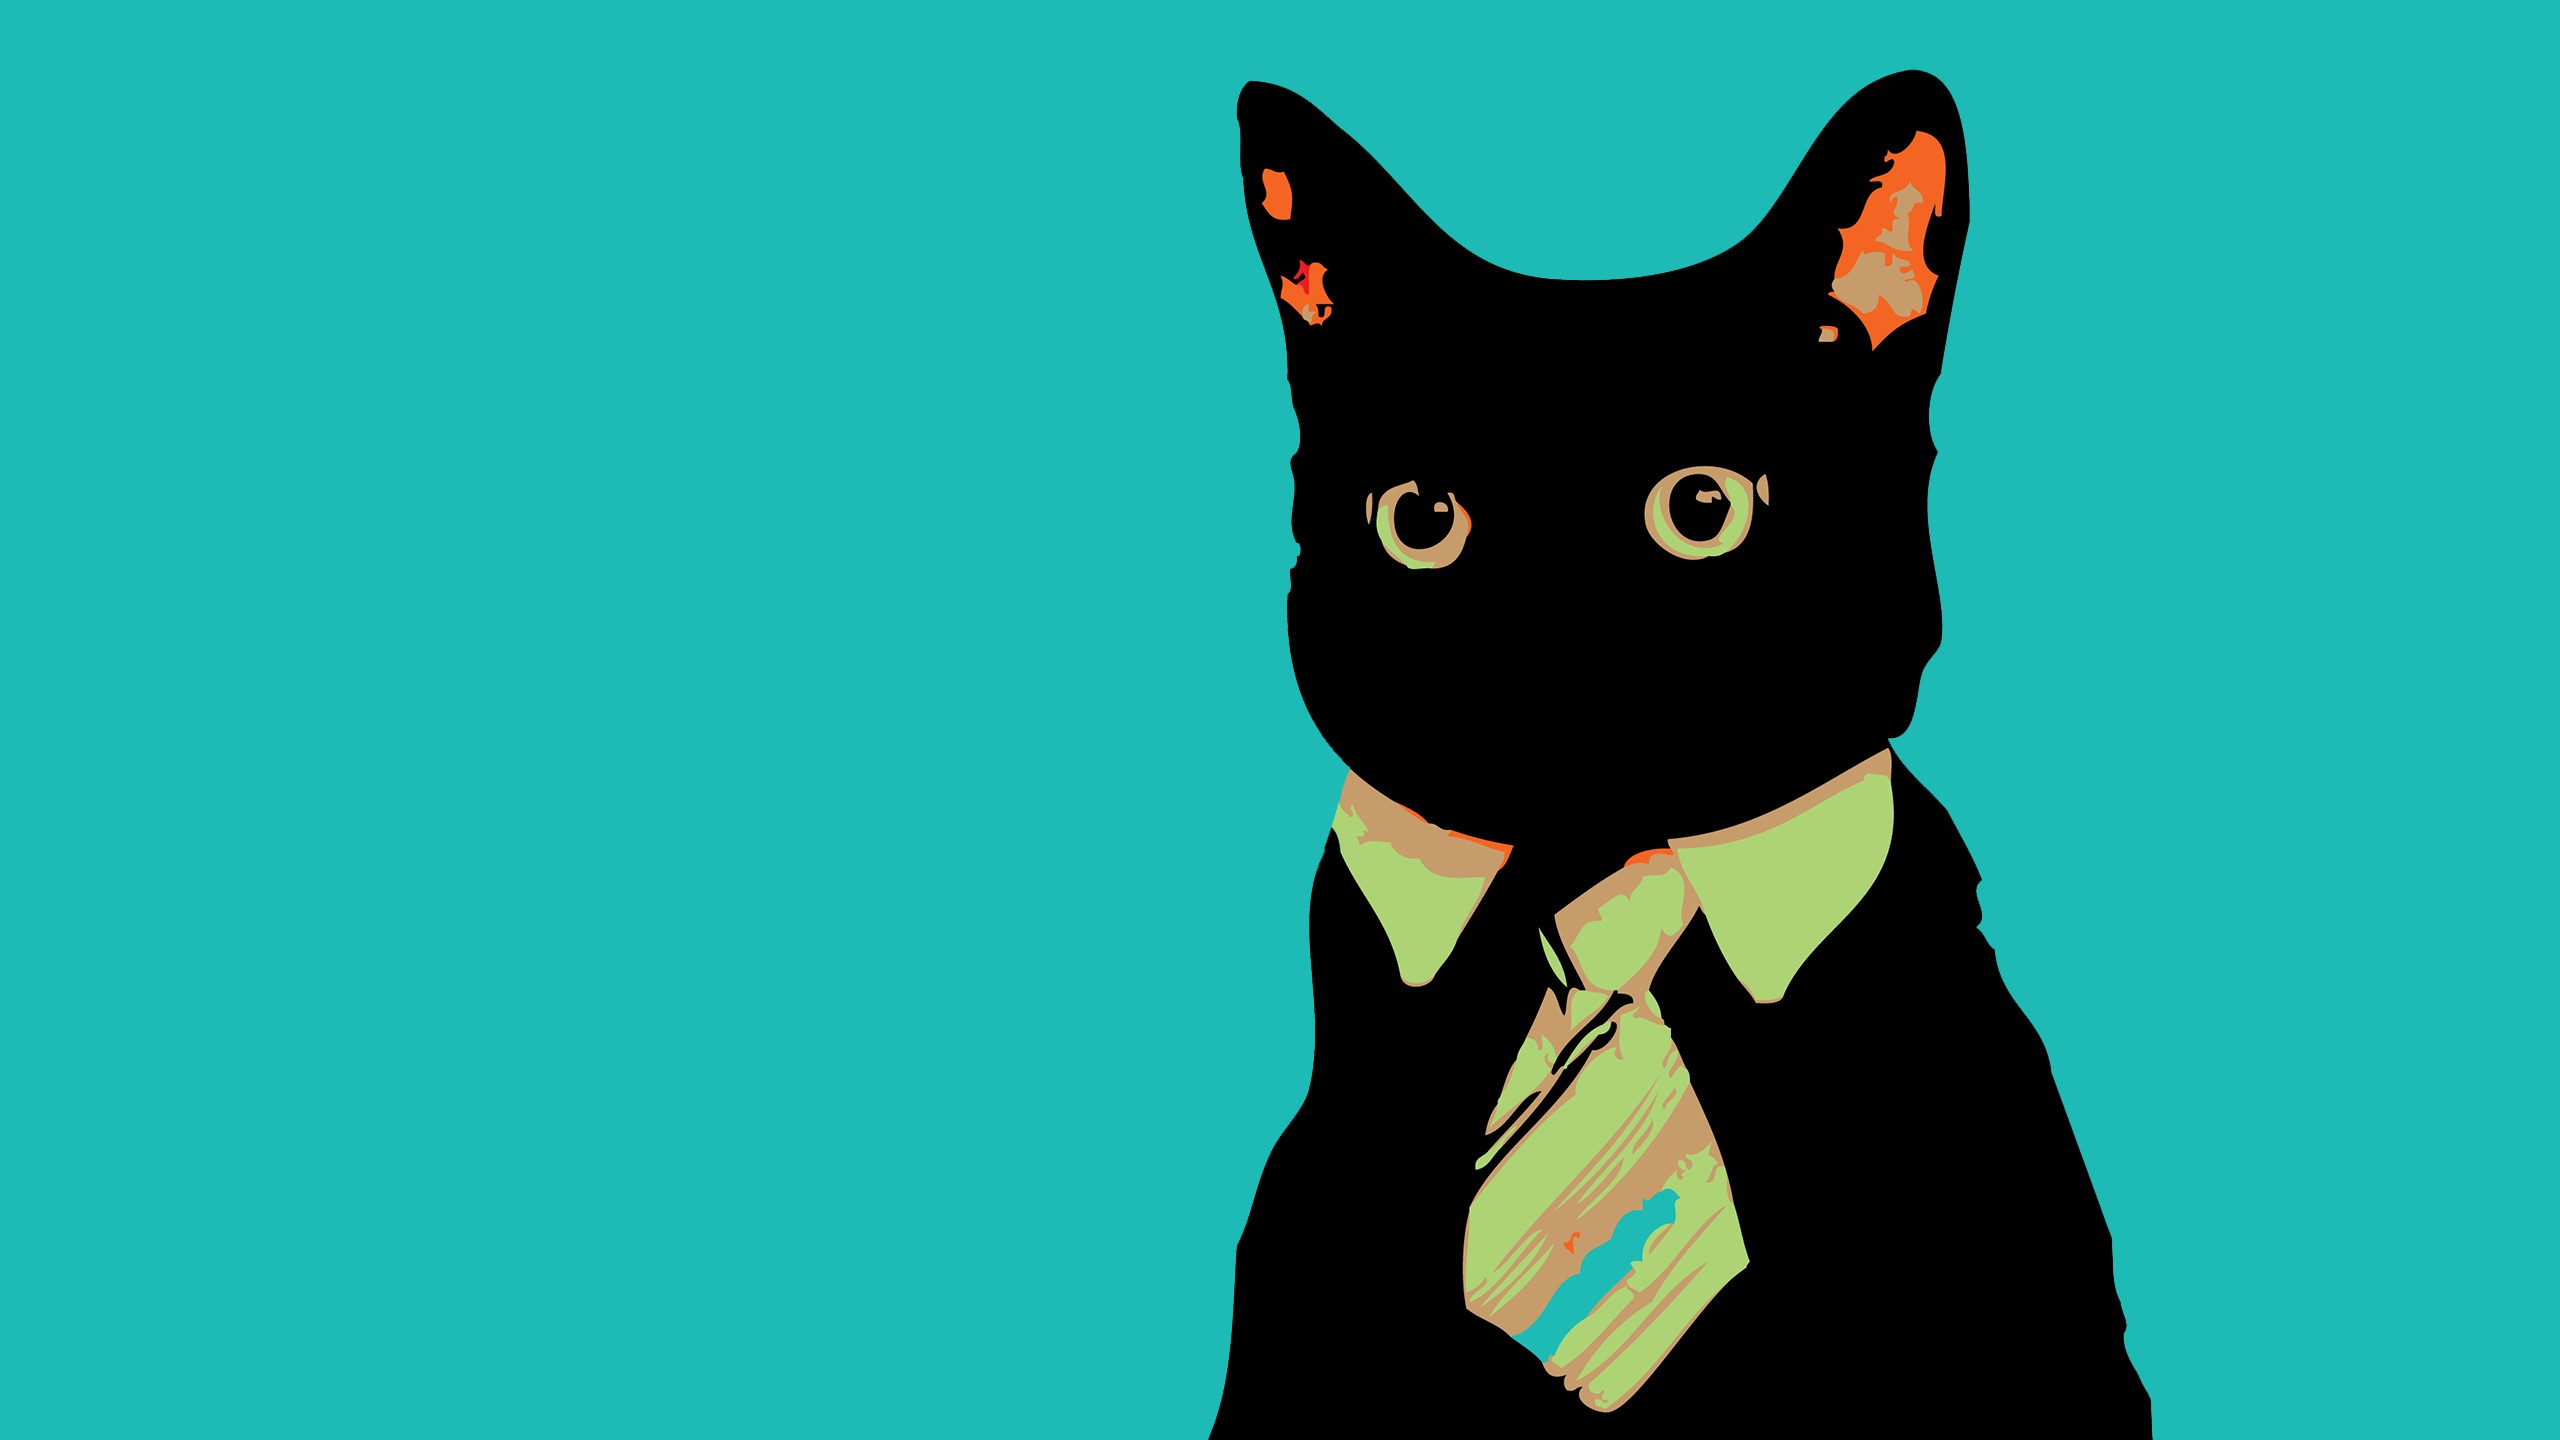 meme wallpaper,cat,felidae,small to medium sized cats,black cat,green